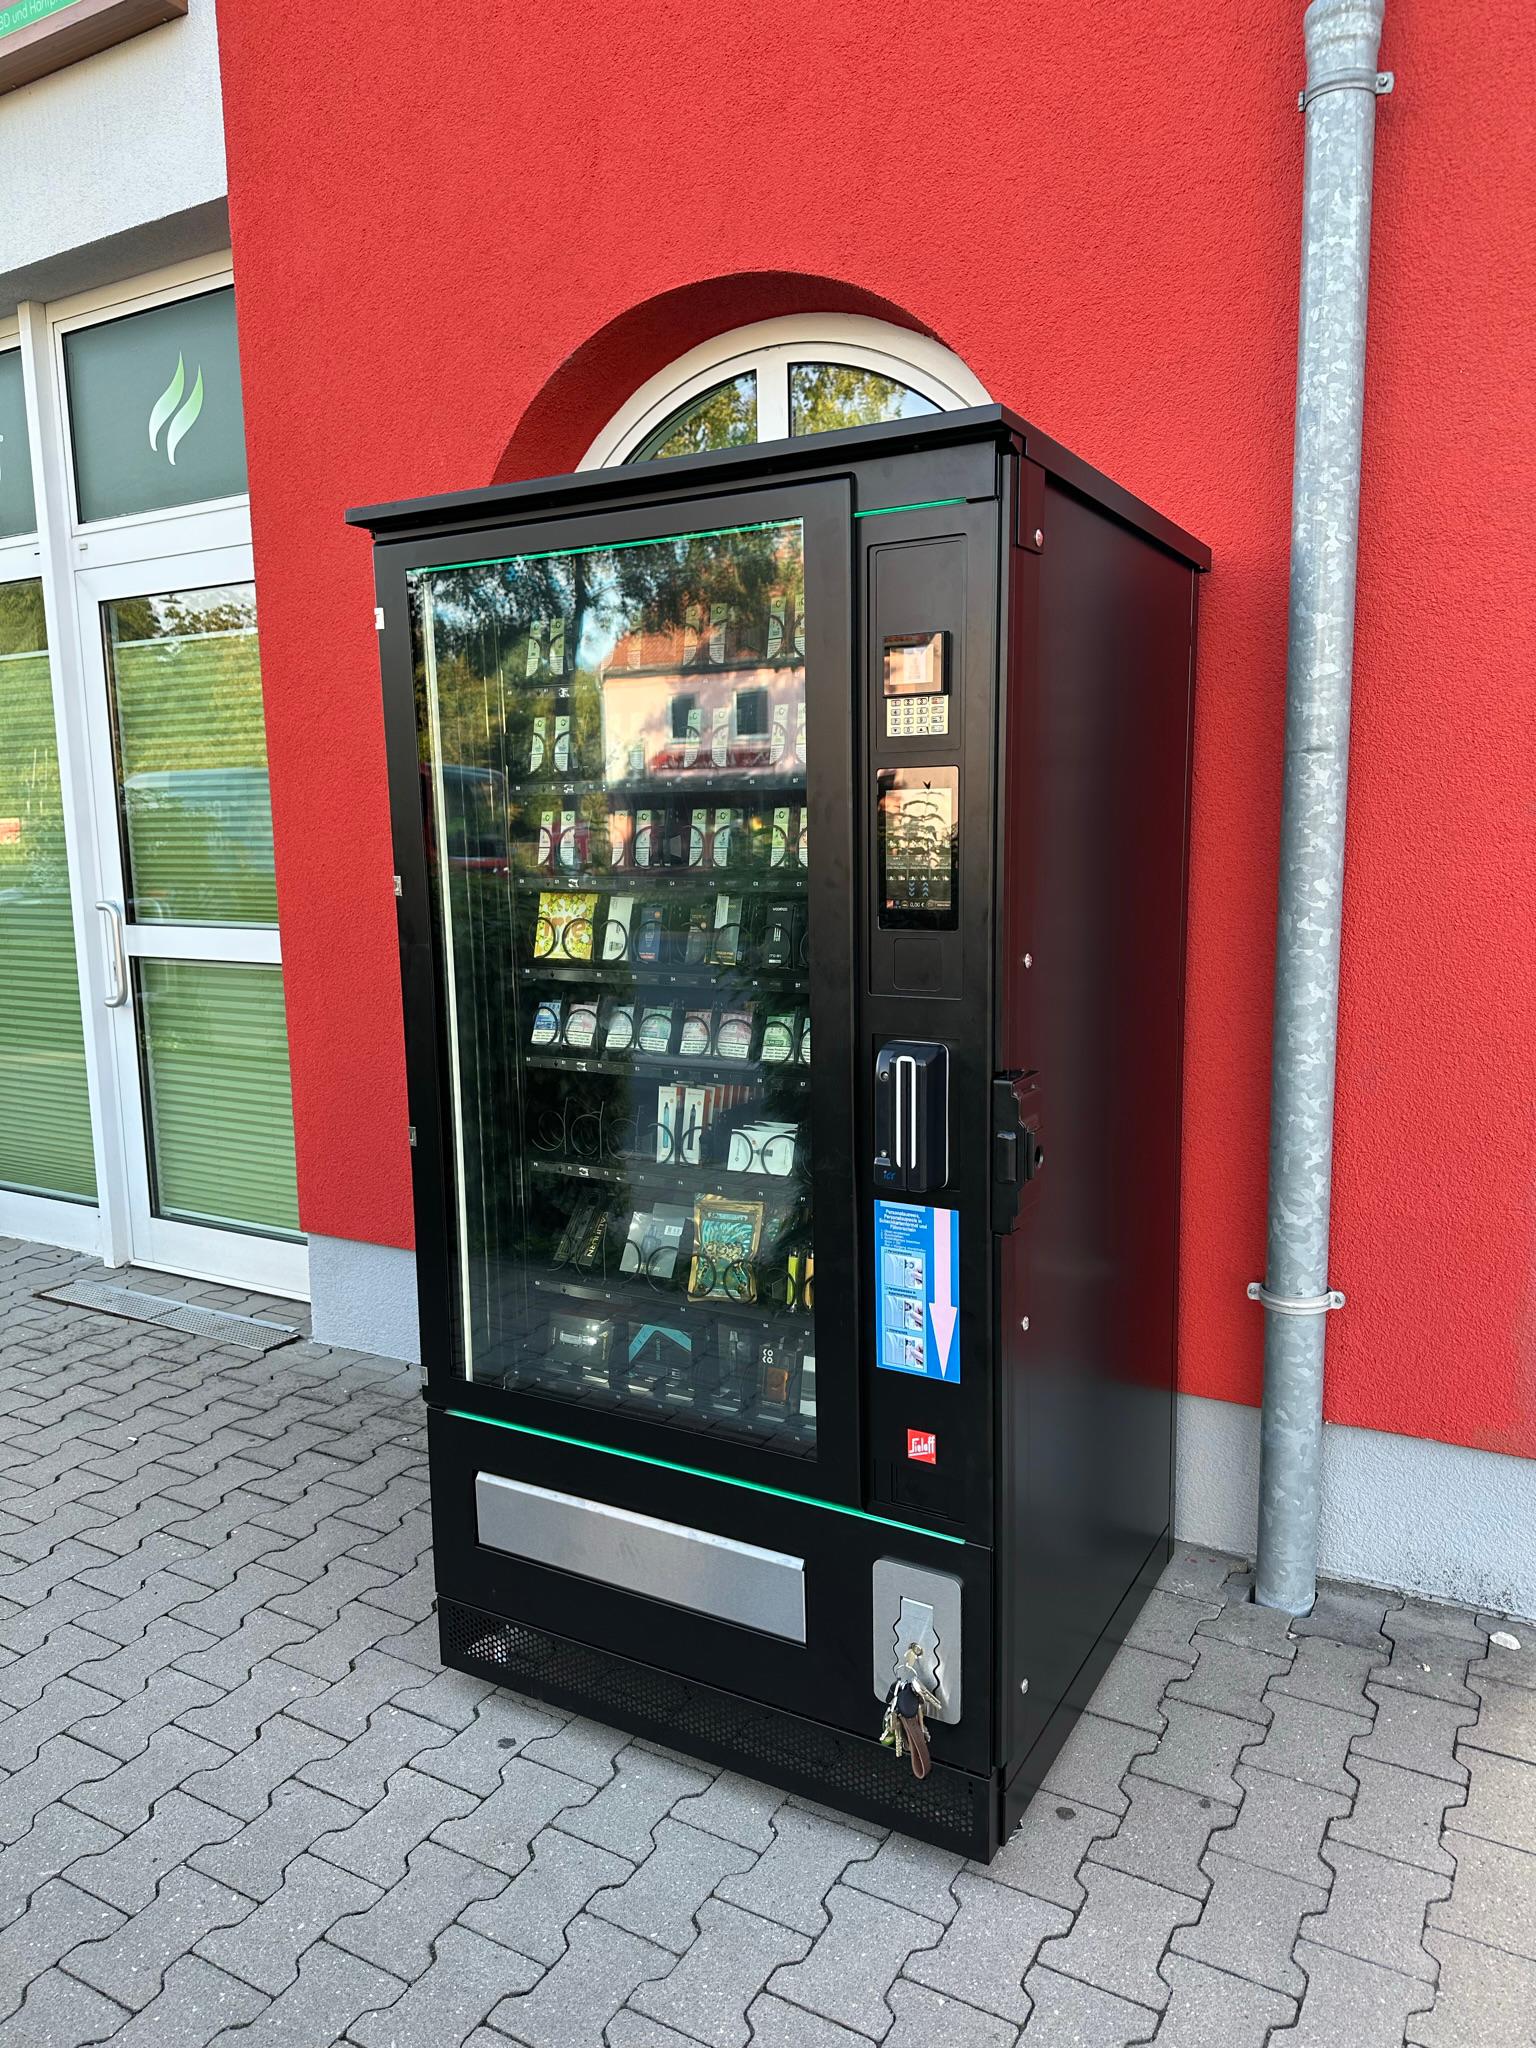 mediCig -  Vape 24/7 Automat Fürth
Schwabacher Str. 261
90763 Fürth
Öffnungszeiten: 24 Stunden geöffnet